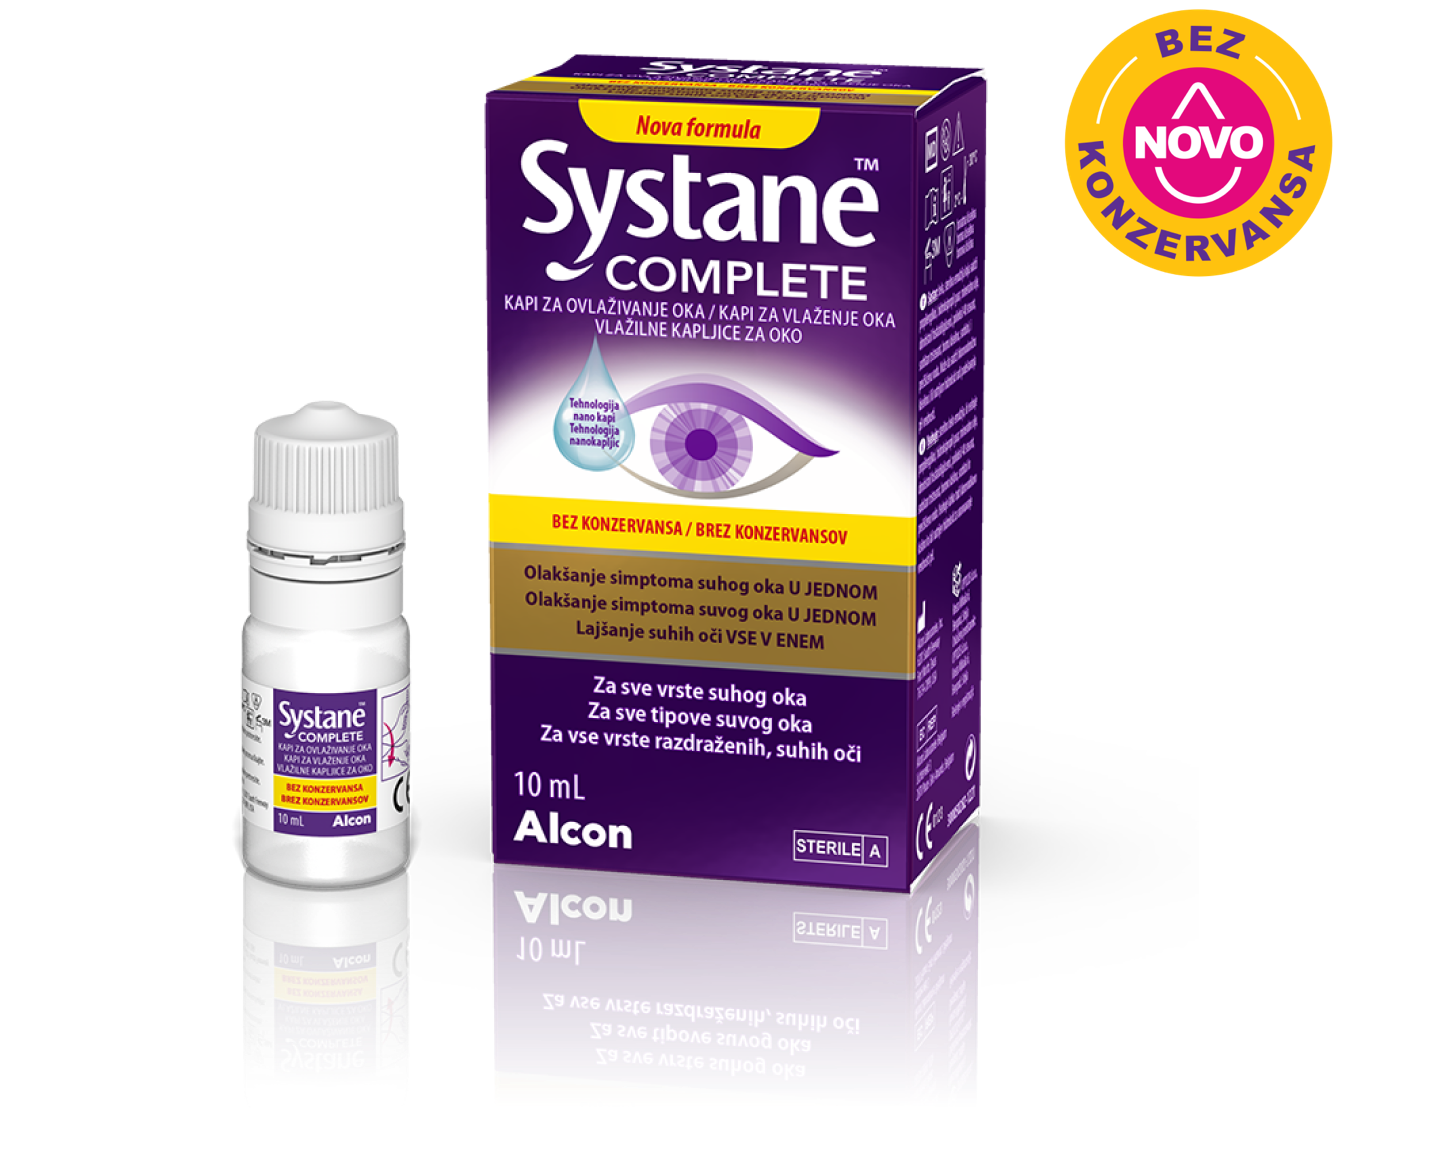 Systane® Complete bez konzervansa kapi za oči kutija proizvoda i kartonska kutija bočice